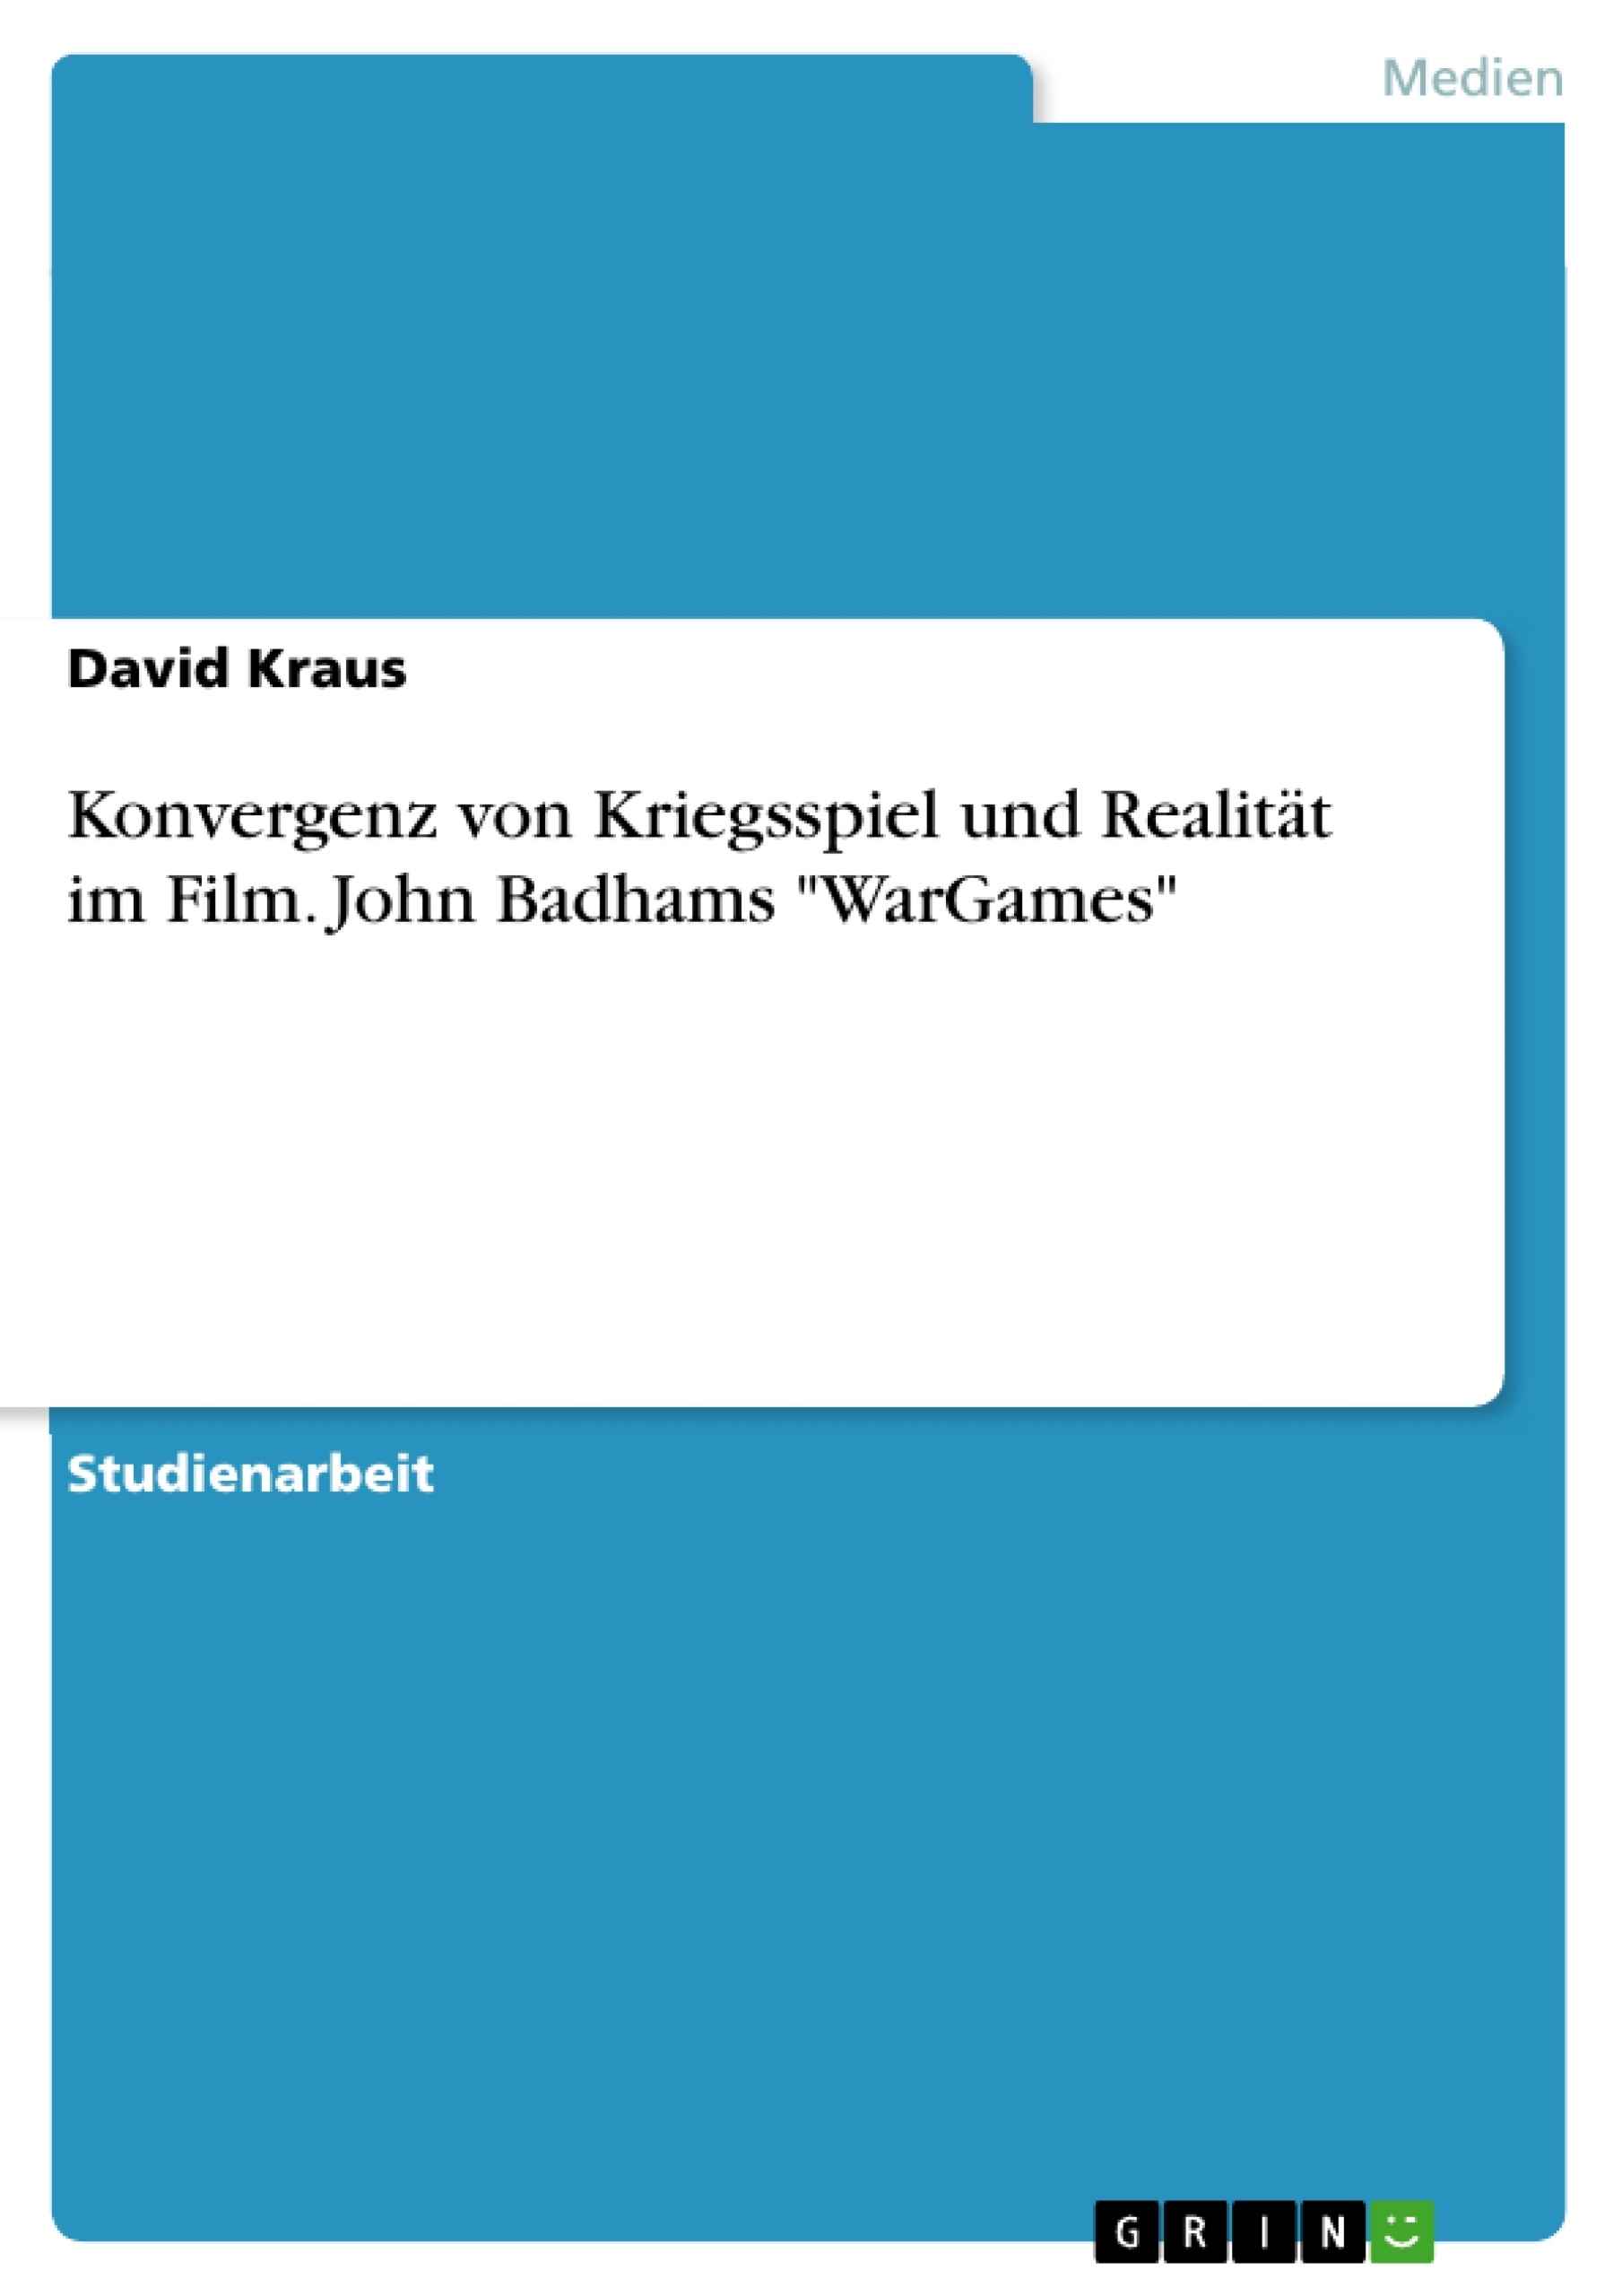 Titre: Konvergenz von Kriegsspiel und Realität im Film. John Badhams "WarGames"